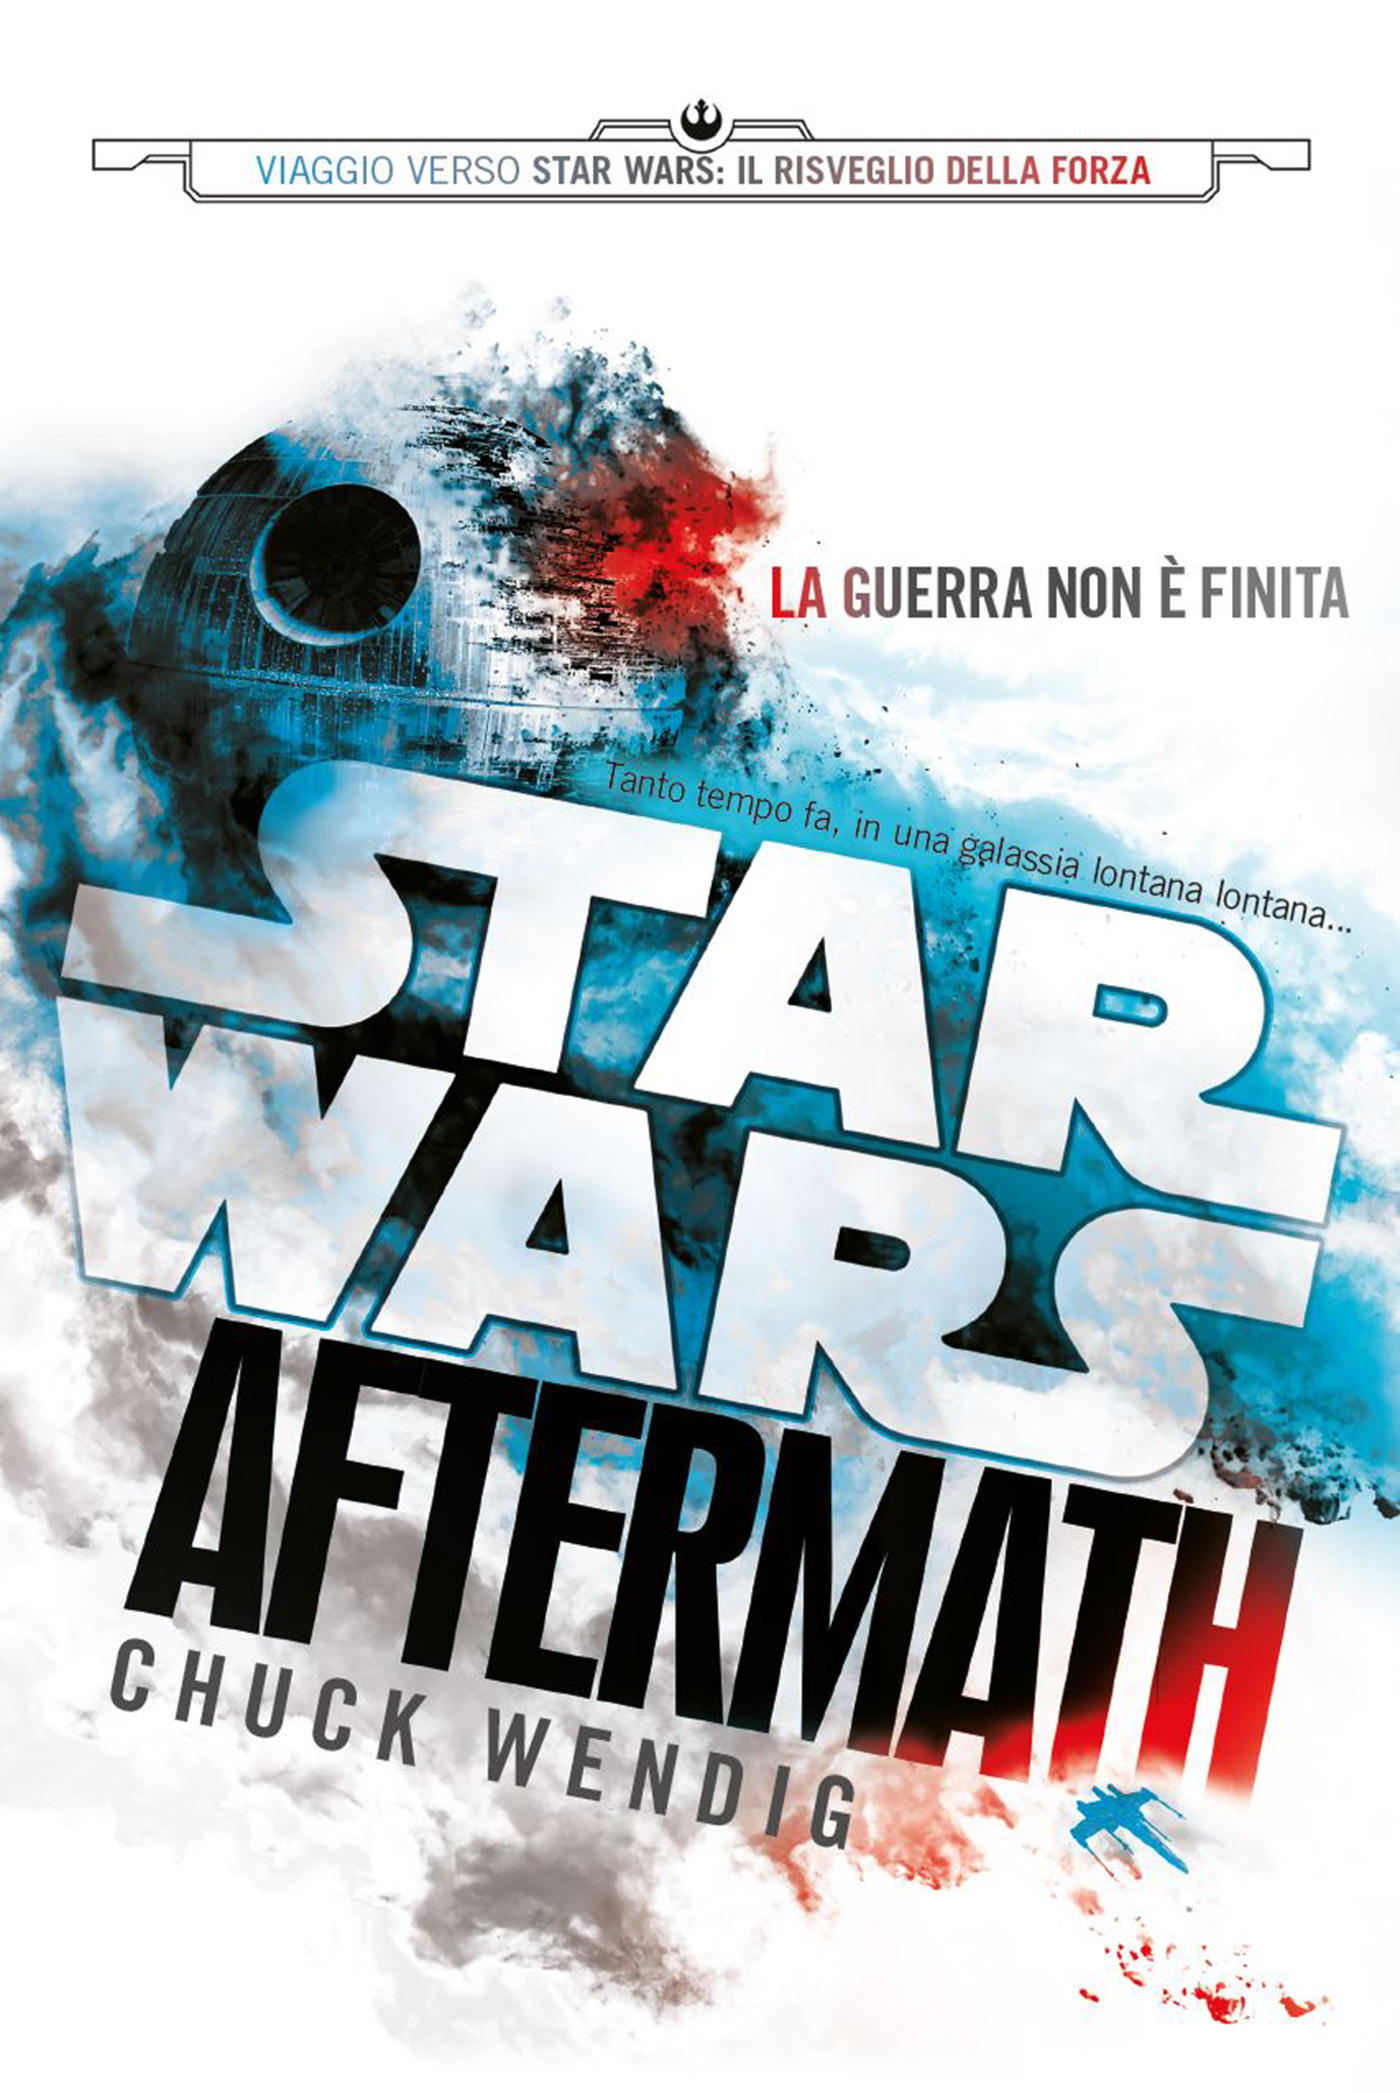 Star wars aftermath free pdf